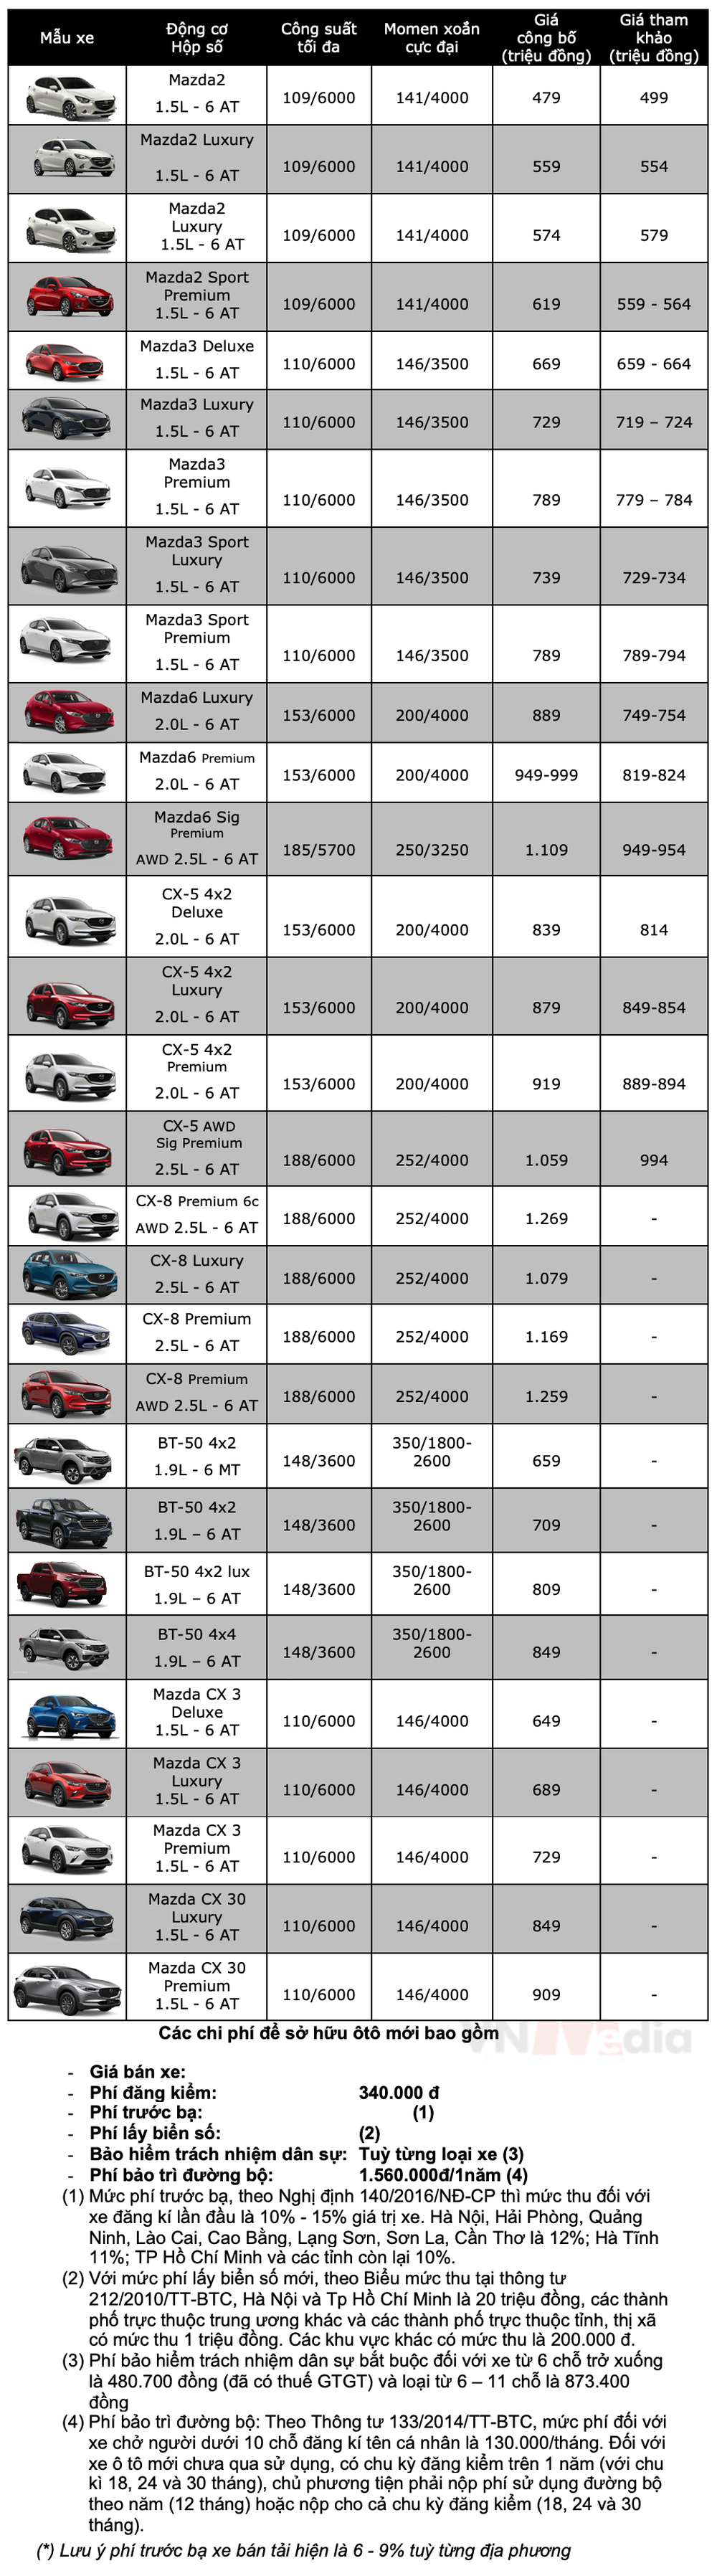 Bảng giá xe Mazda tháng 2: Mazda6 được ưu đãi lên tới 110 triệu đồng - Ảnh 2.